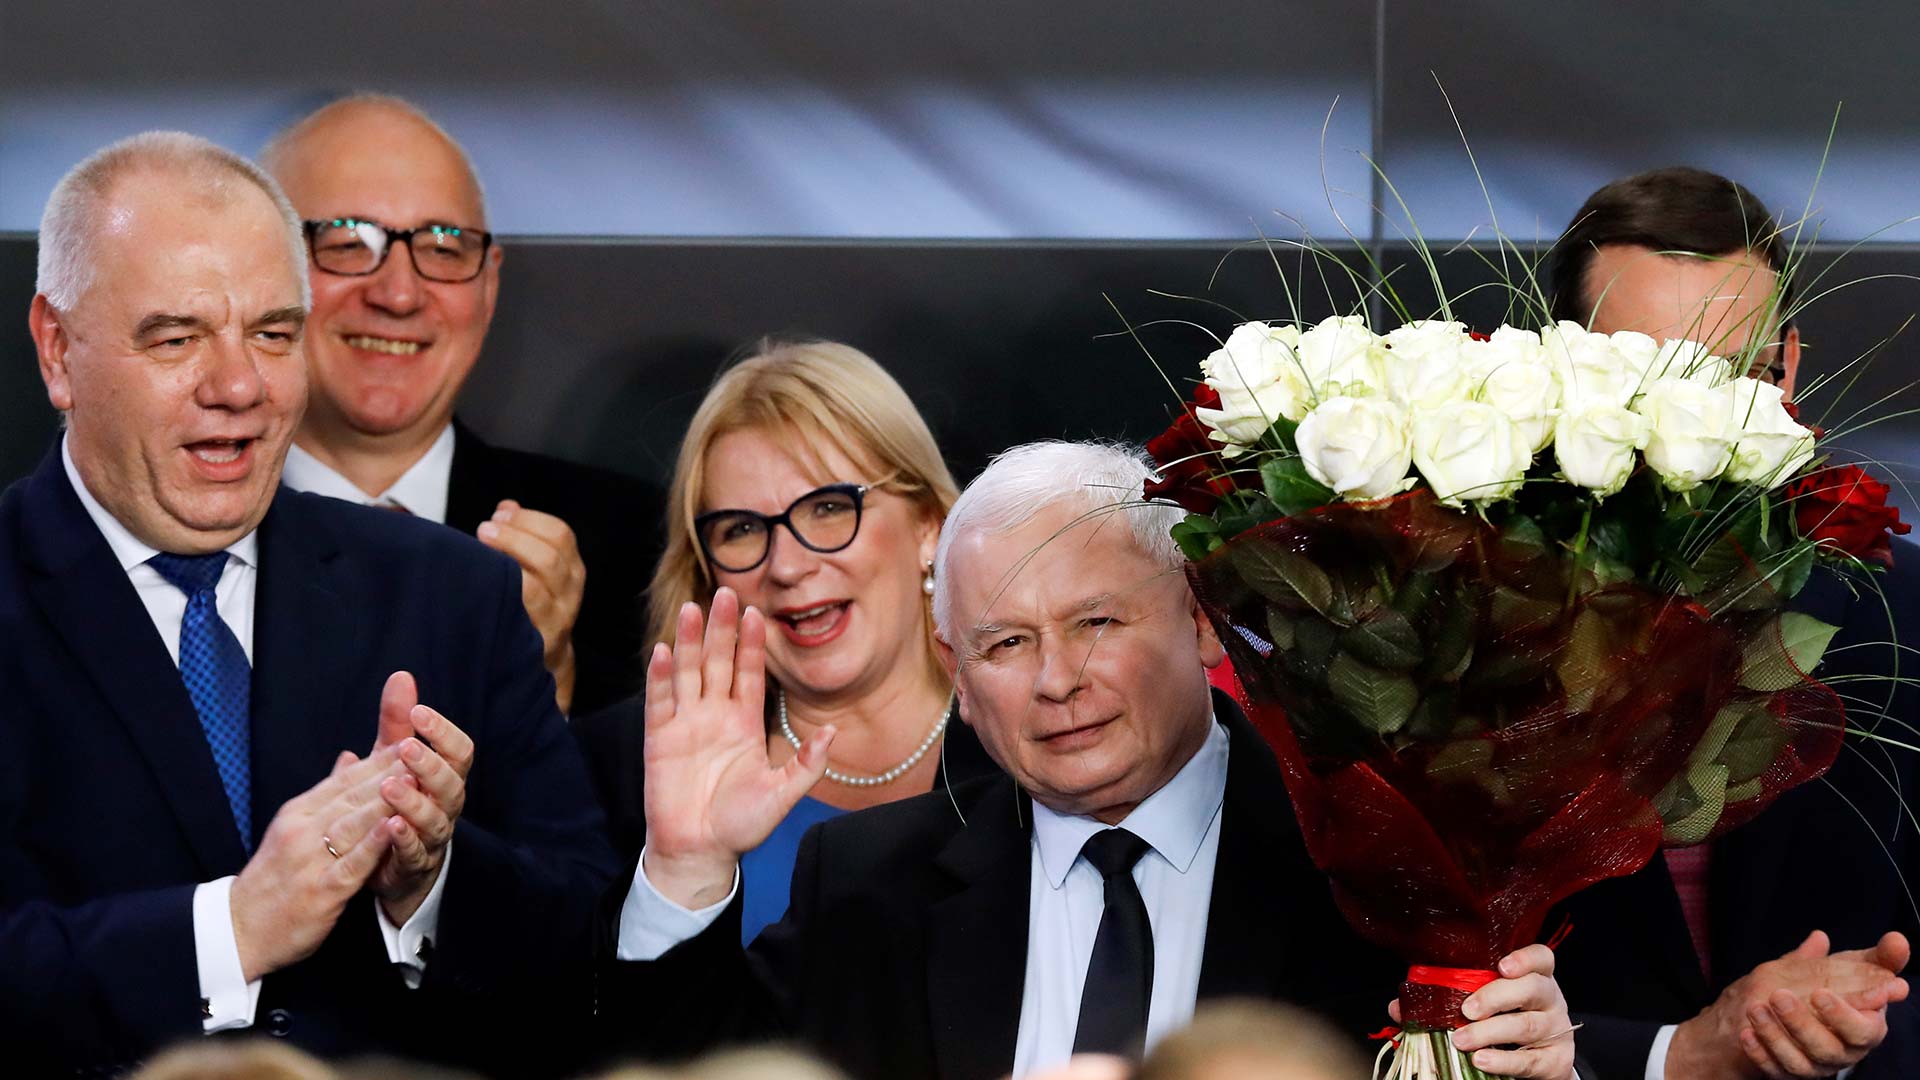 El conservador Ley y Justicia revalida su mayoría absoluta en las elecciones de Polonia